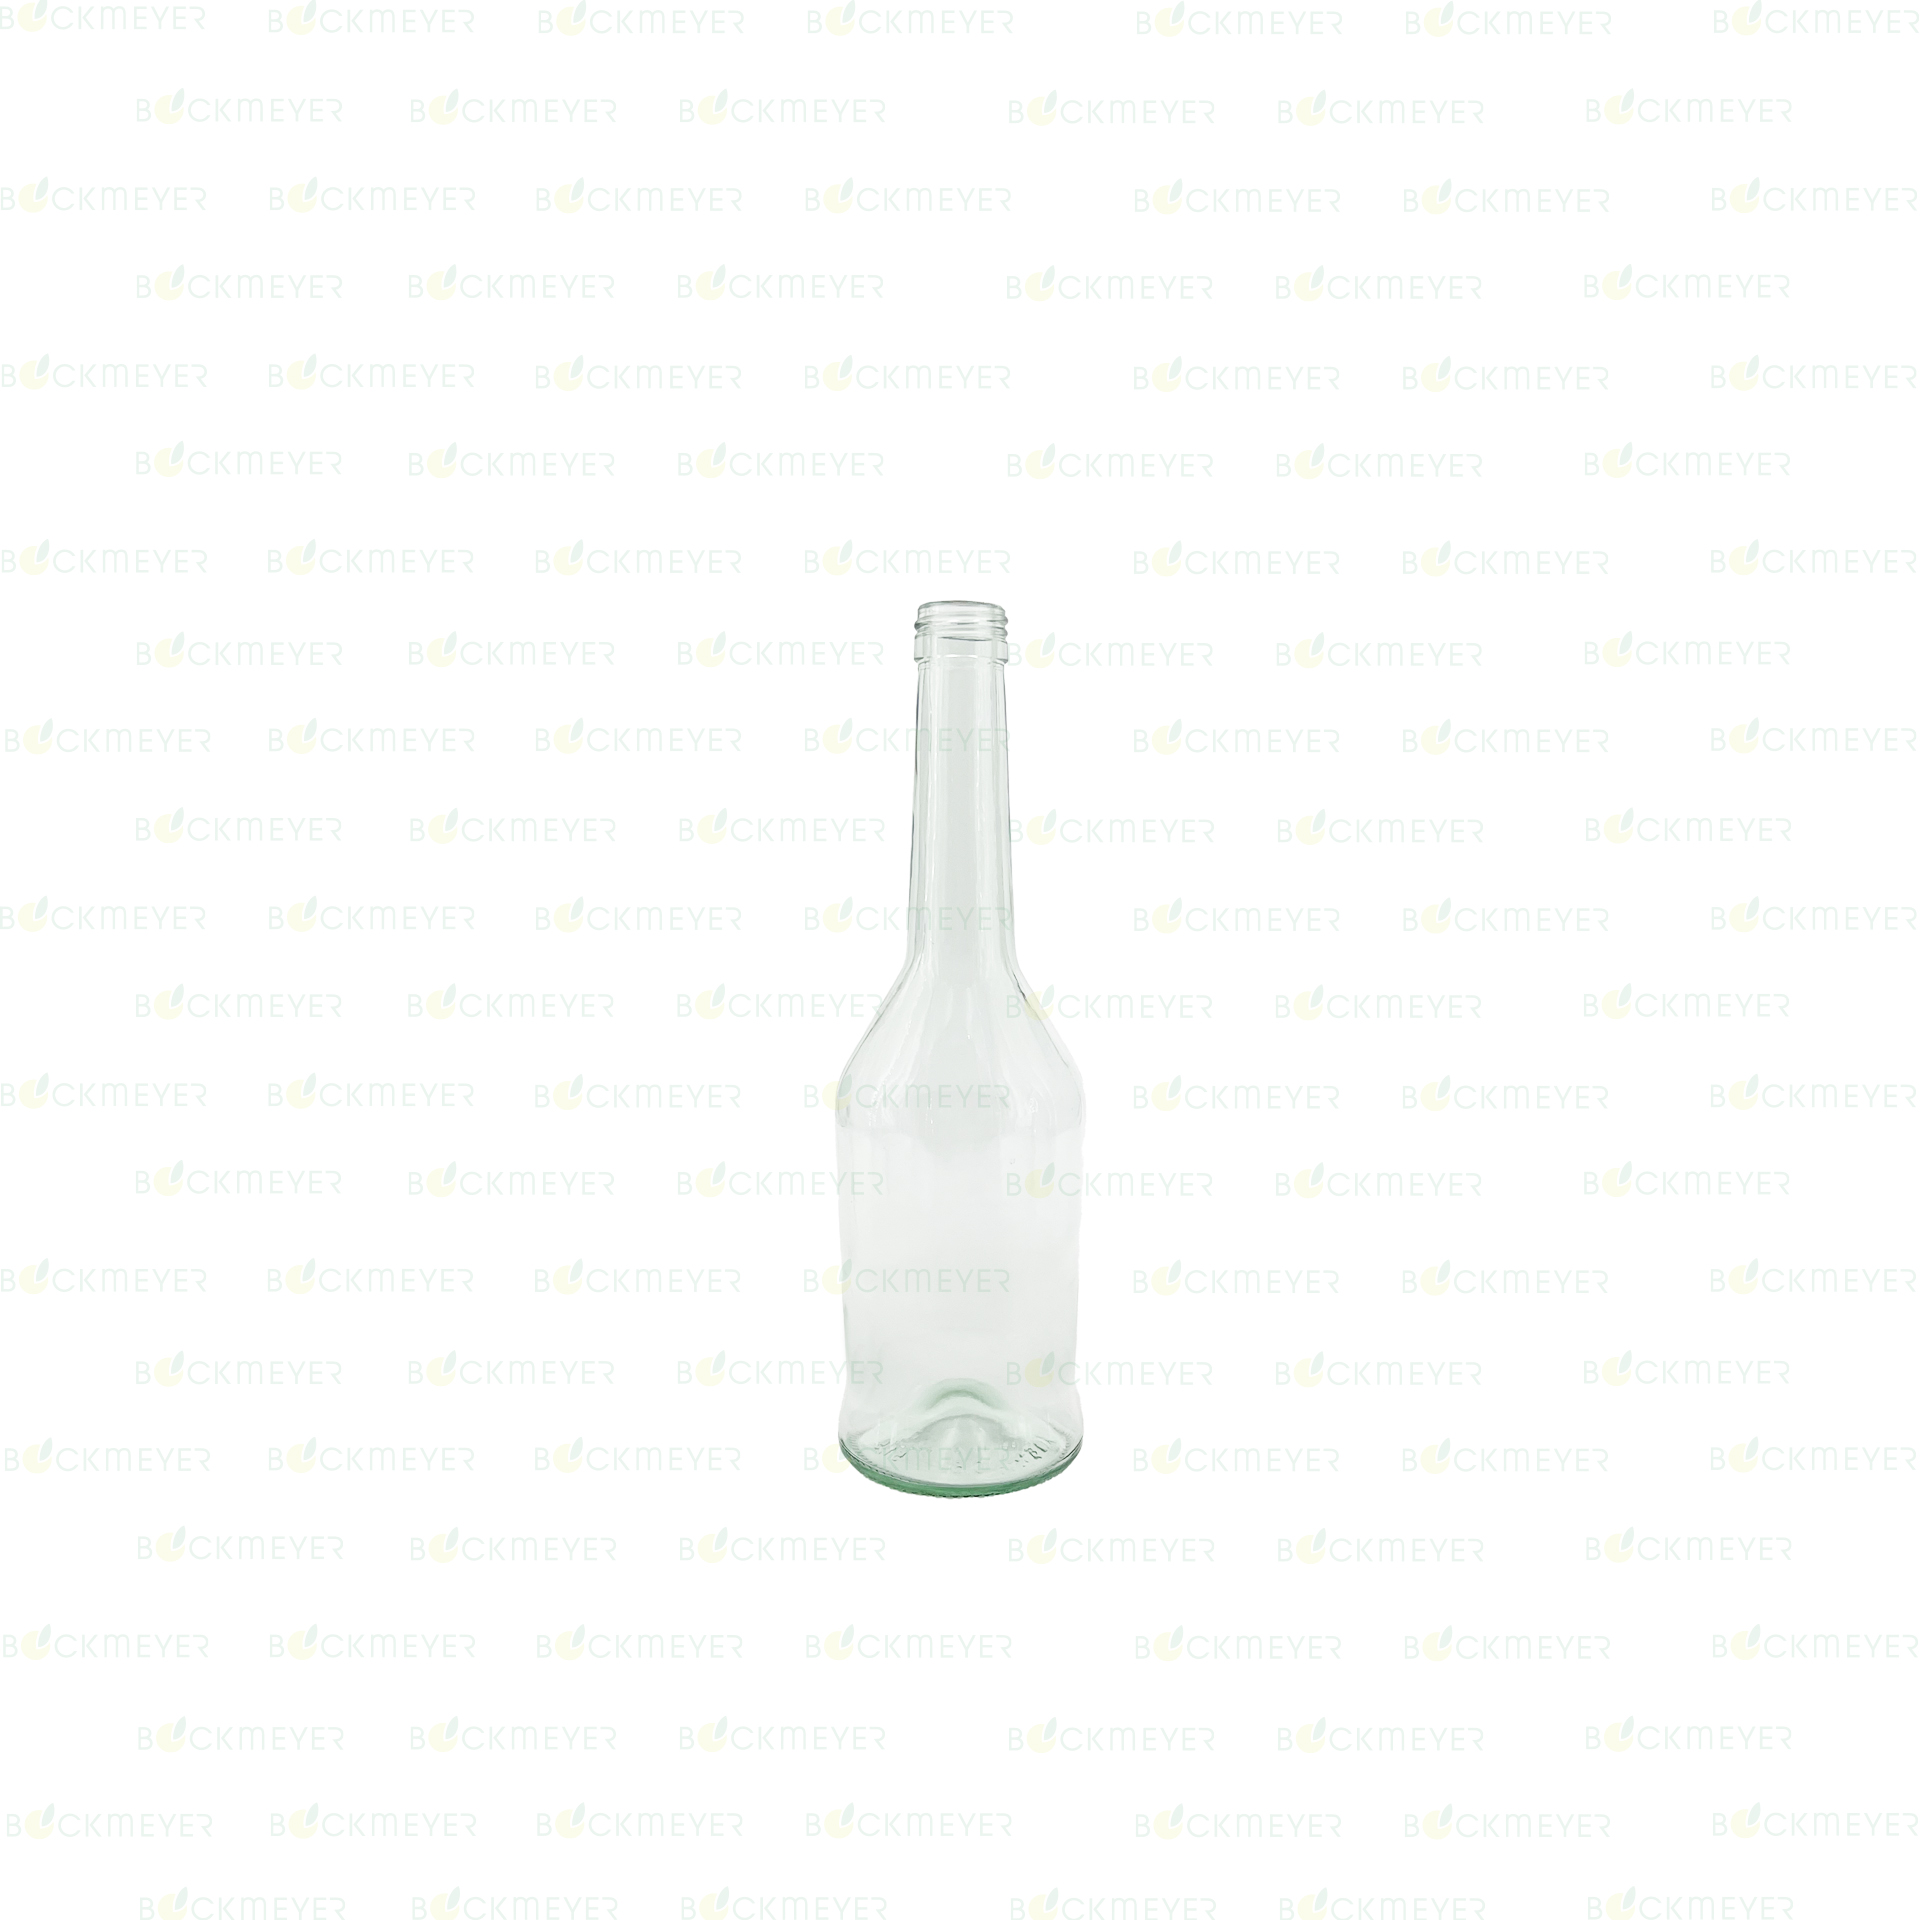 Napoleonflasche 0,5 Liter, weiß (OHNE VERSCHLUSS)